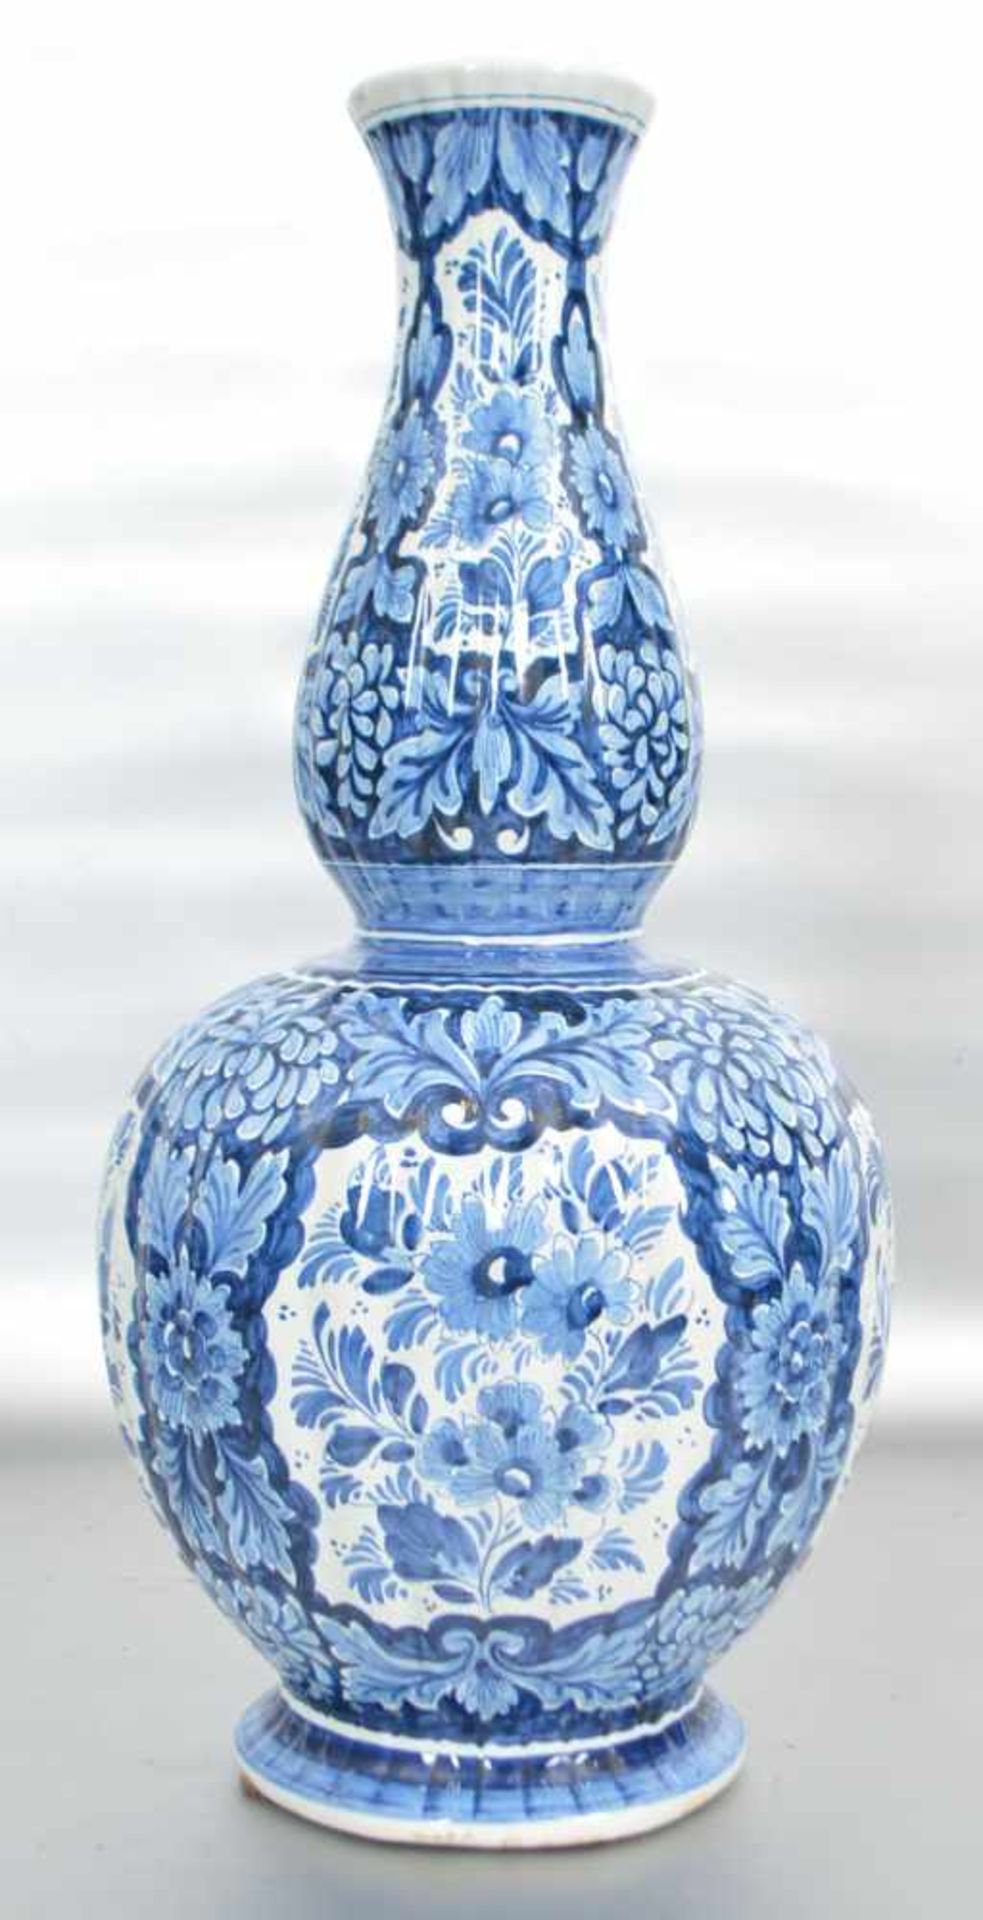 Vasegebaucht, mit blauer Blumenbemalung, H 44 cm, FM Delft